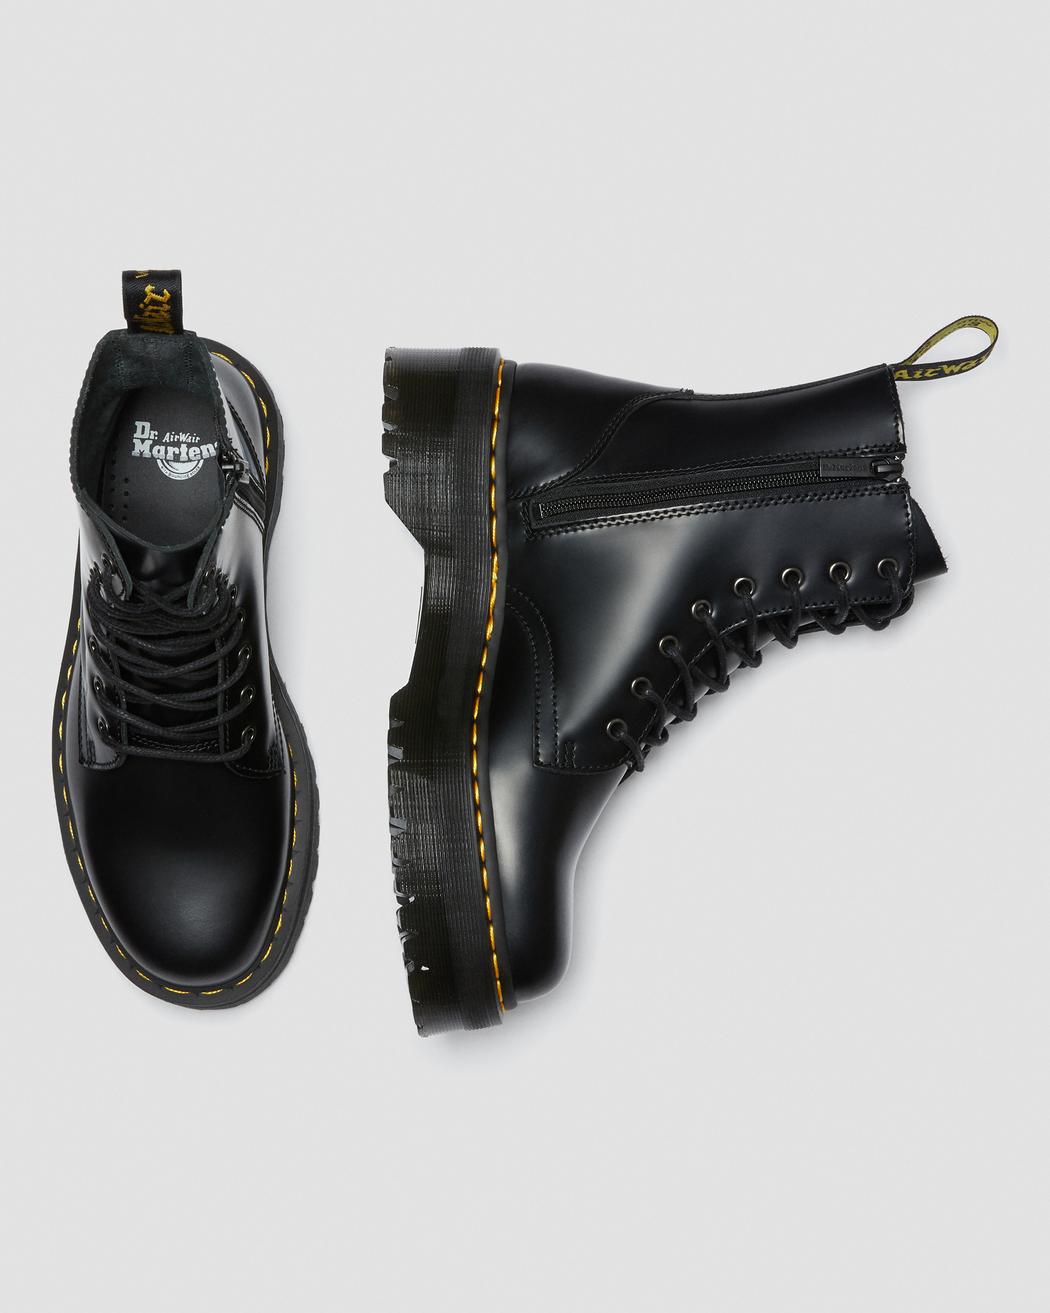 Jadon Black Smooth Leather Platform Boots DM15265001 - 5